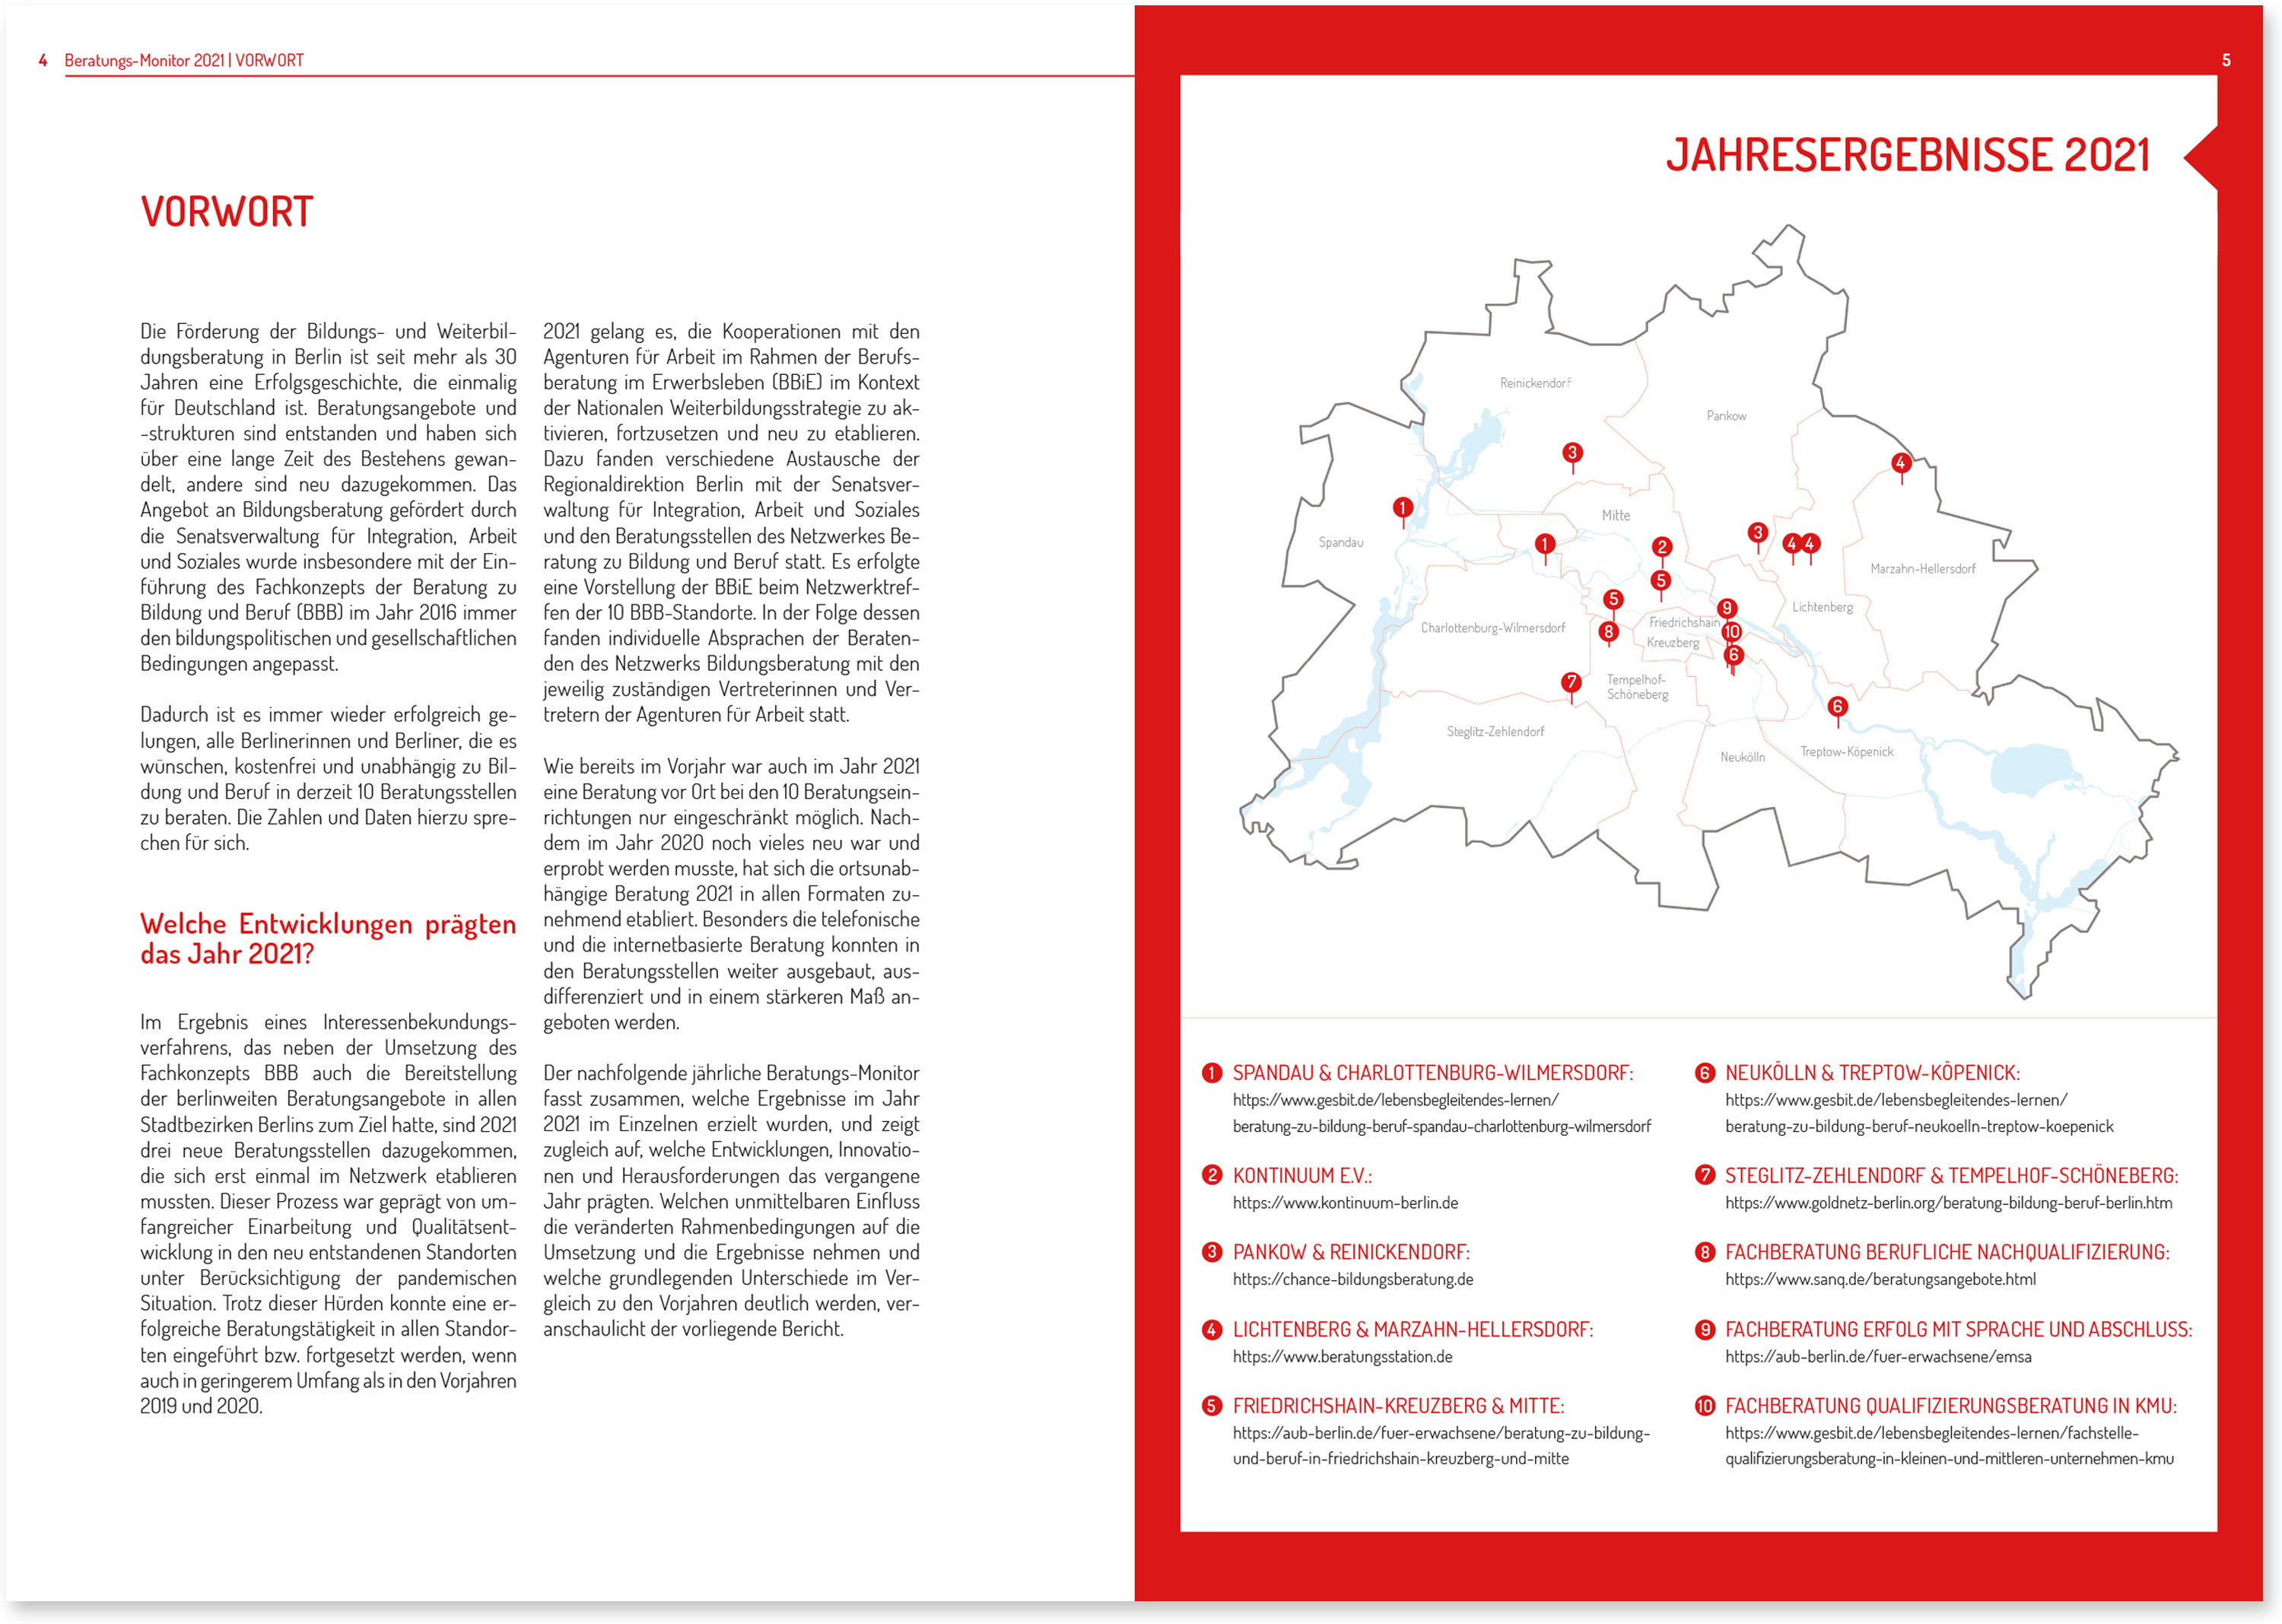 reeberdesign | Arbeit und Leben Berlin - Jahresbericht